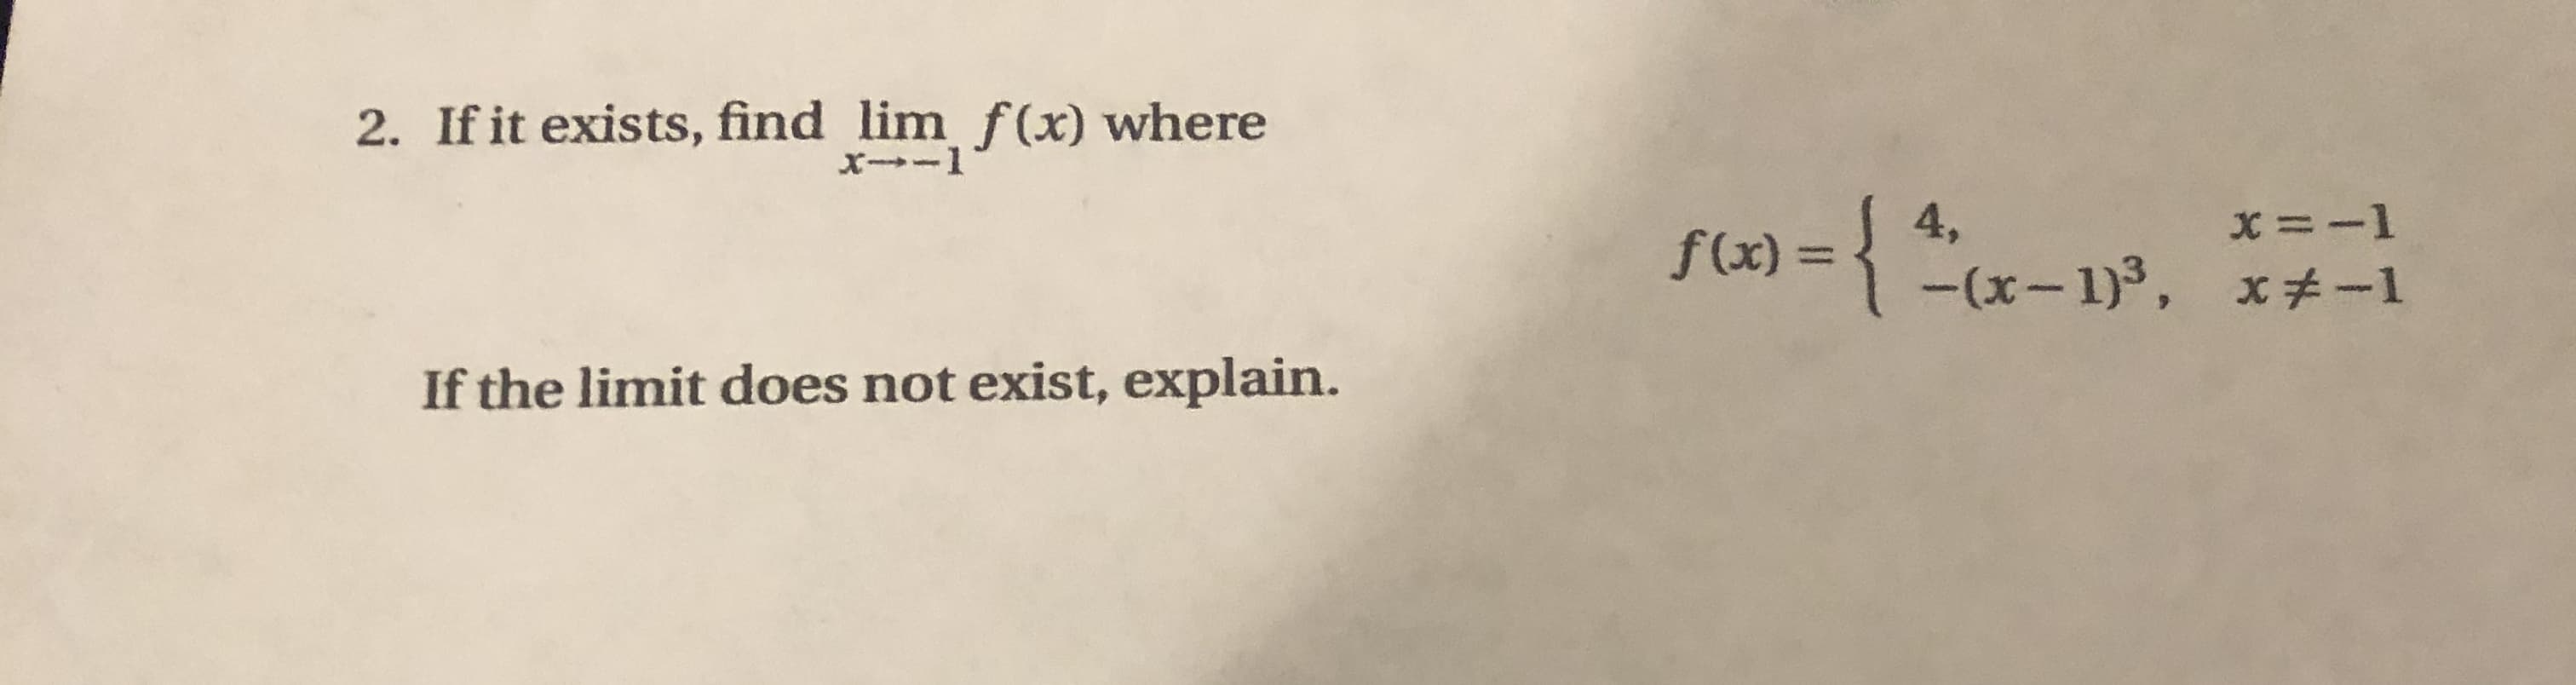 2. If it exists, find lim f(x) where
X--1
x =-1
f(x) = { *x– 1)³, x+-1
4,
If the limit does not exist, explain.
